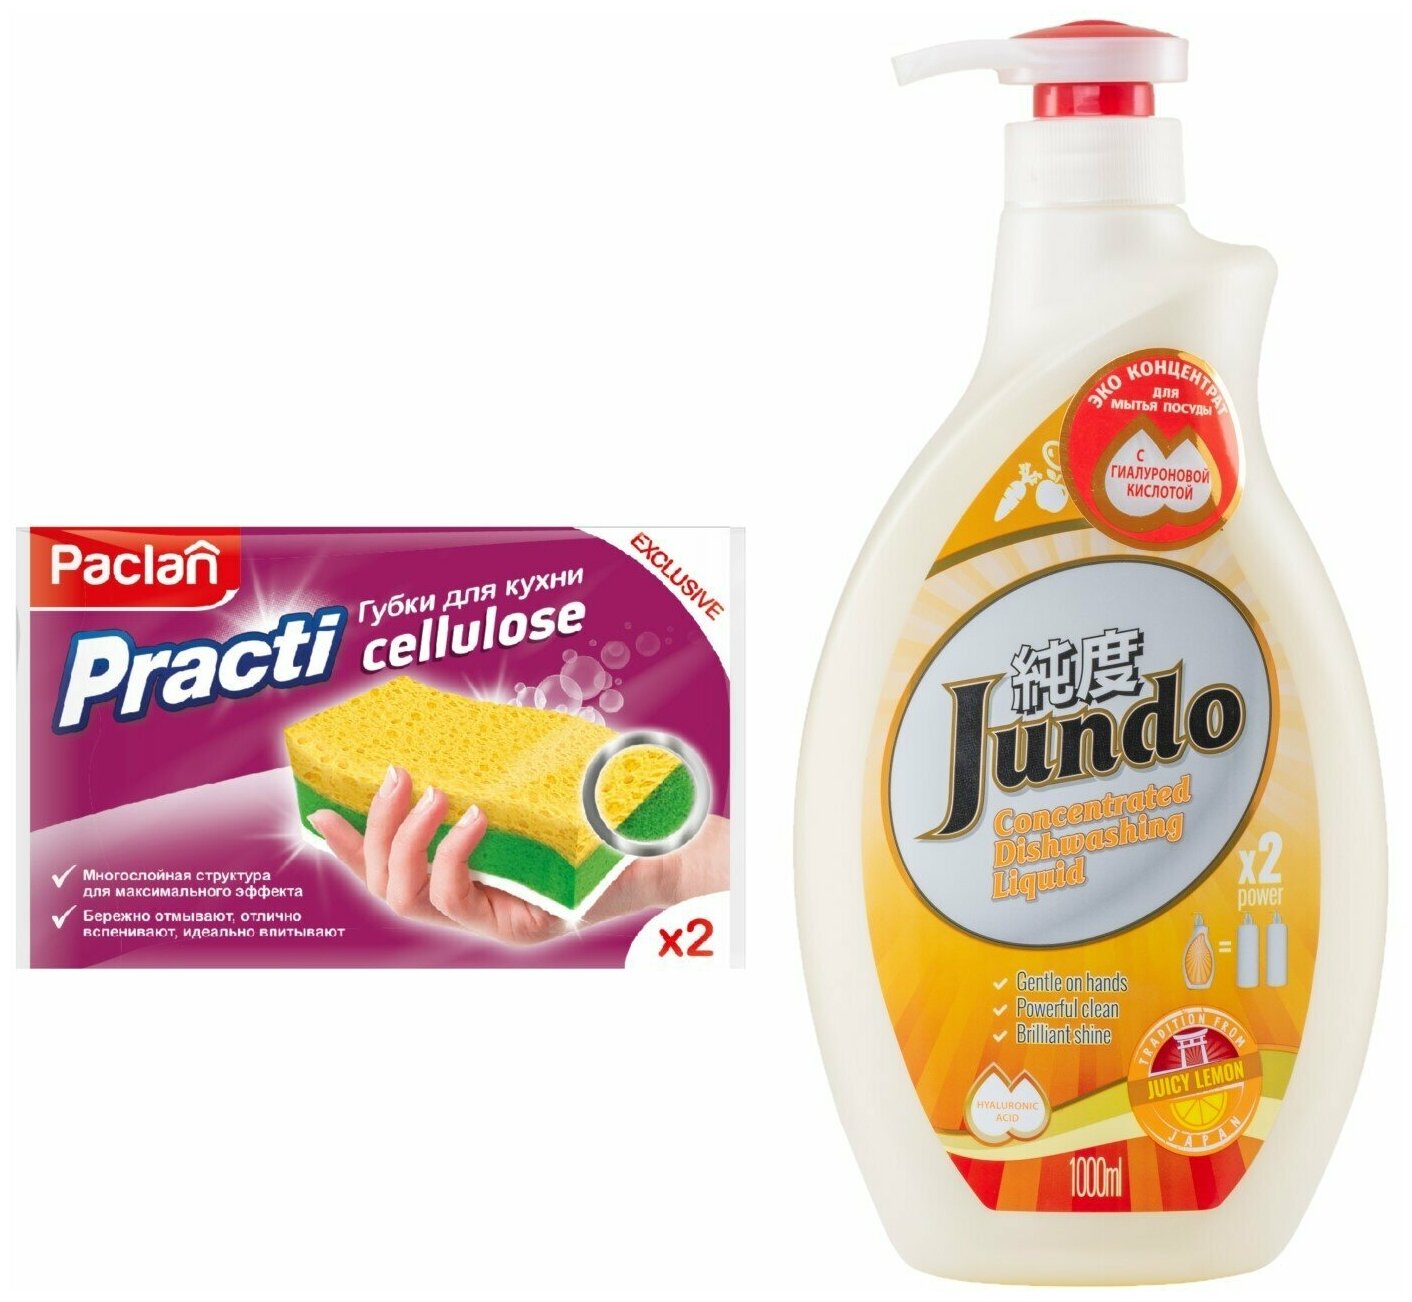 Jundo Концентрированный ЭКО гель с гиалуроновой кислотой для мытья посуды «Juicy Lemon»,1л. + PACLAN PRACTI губки для кухни, 2ШТ.